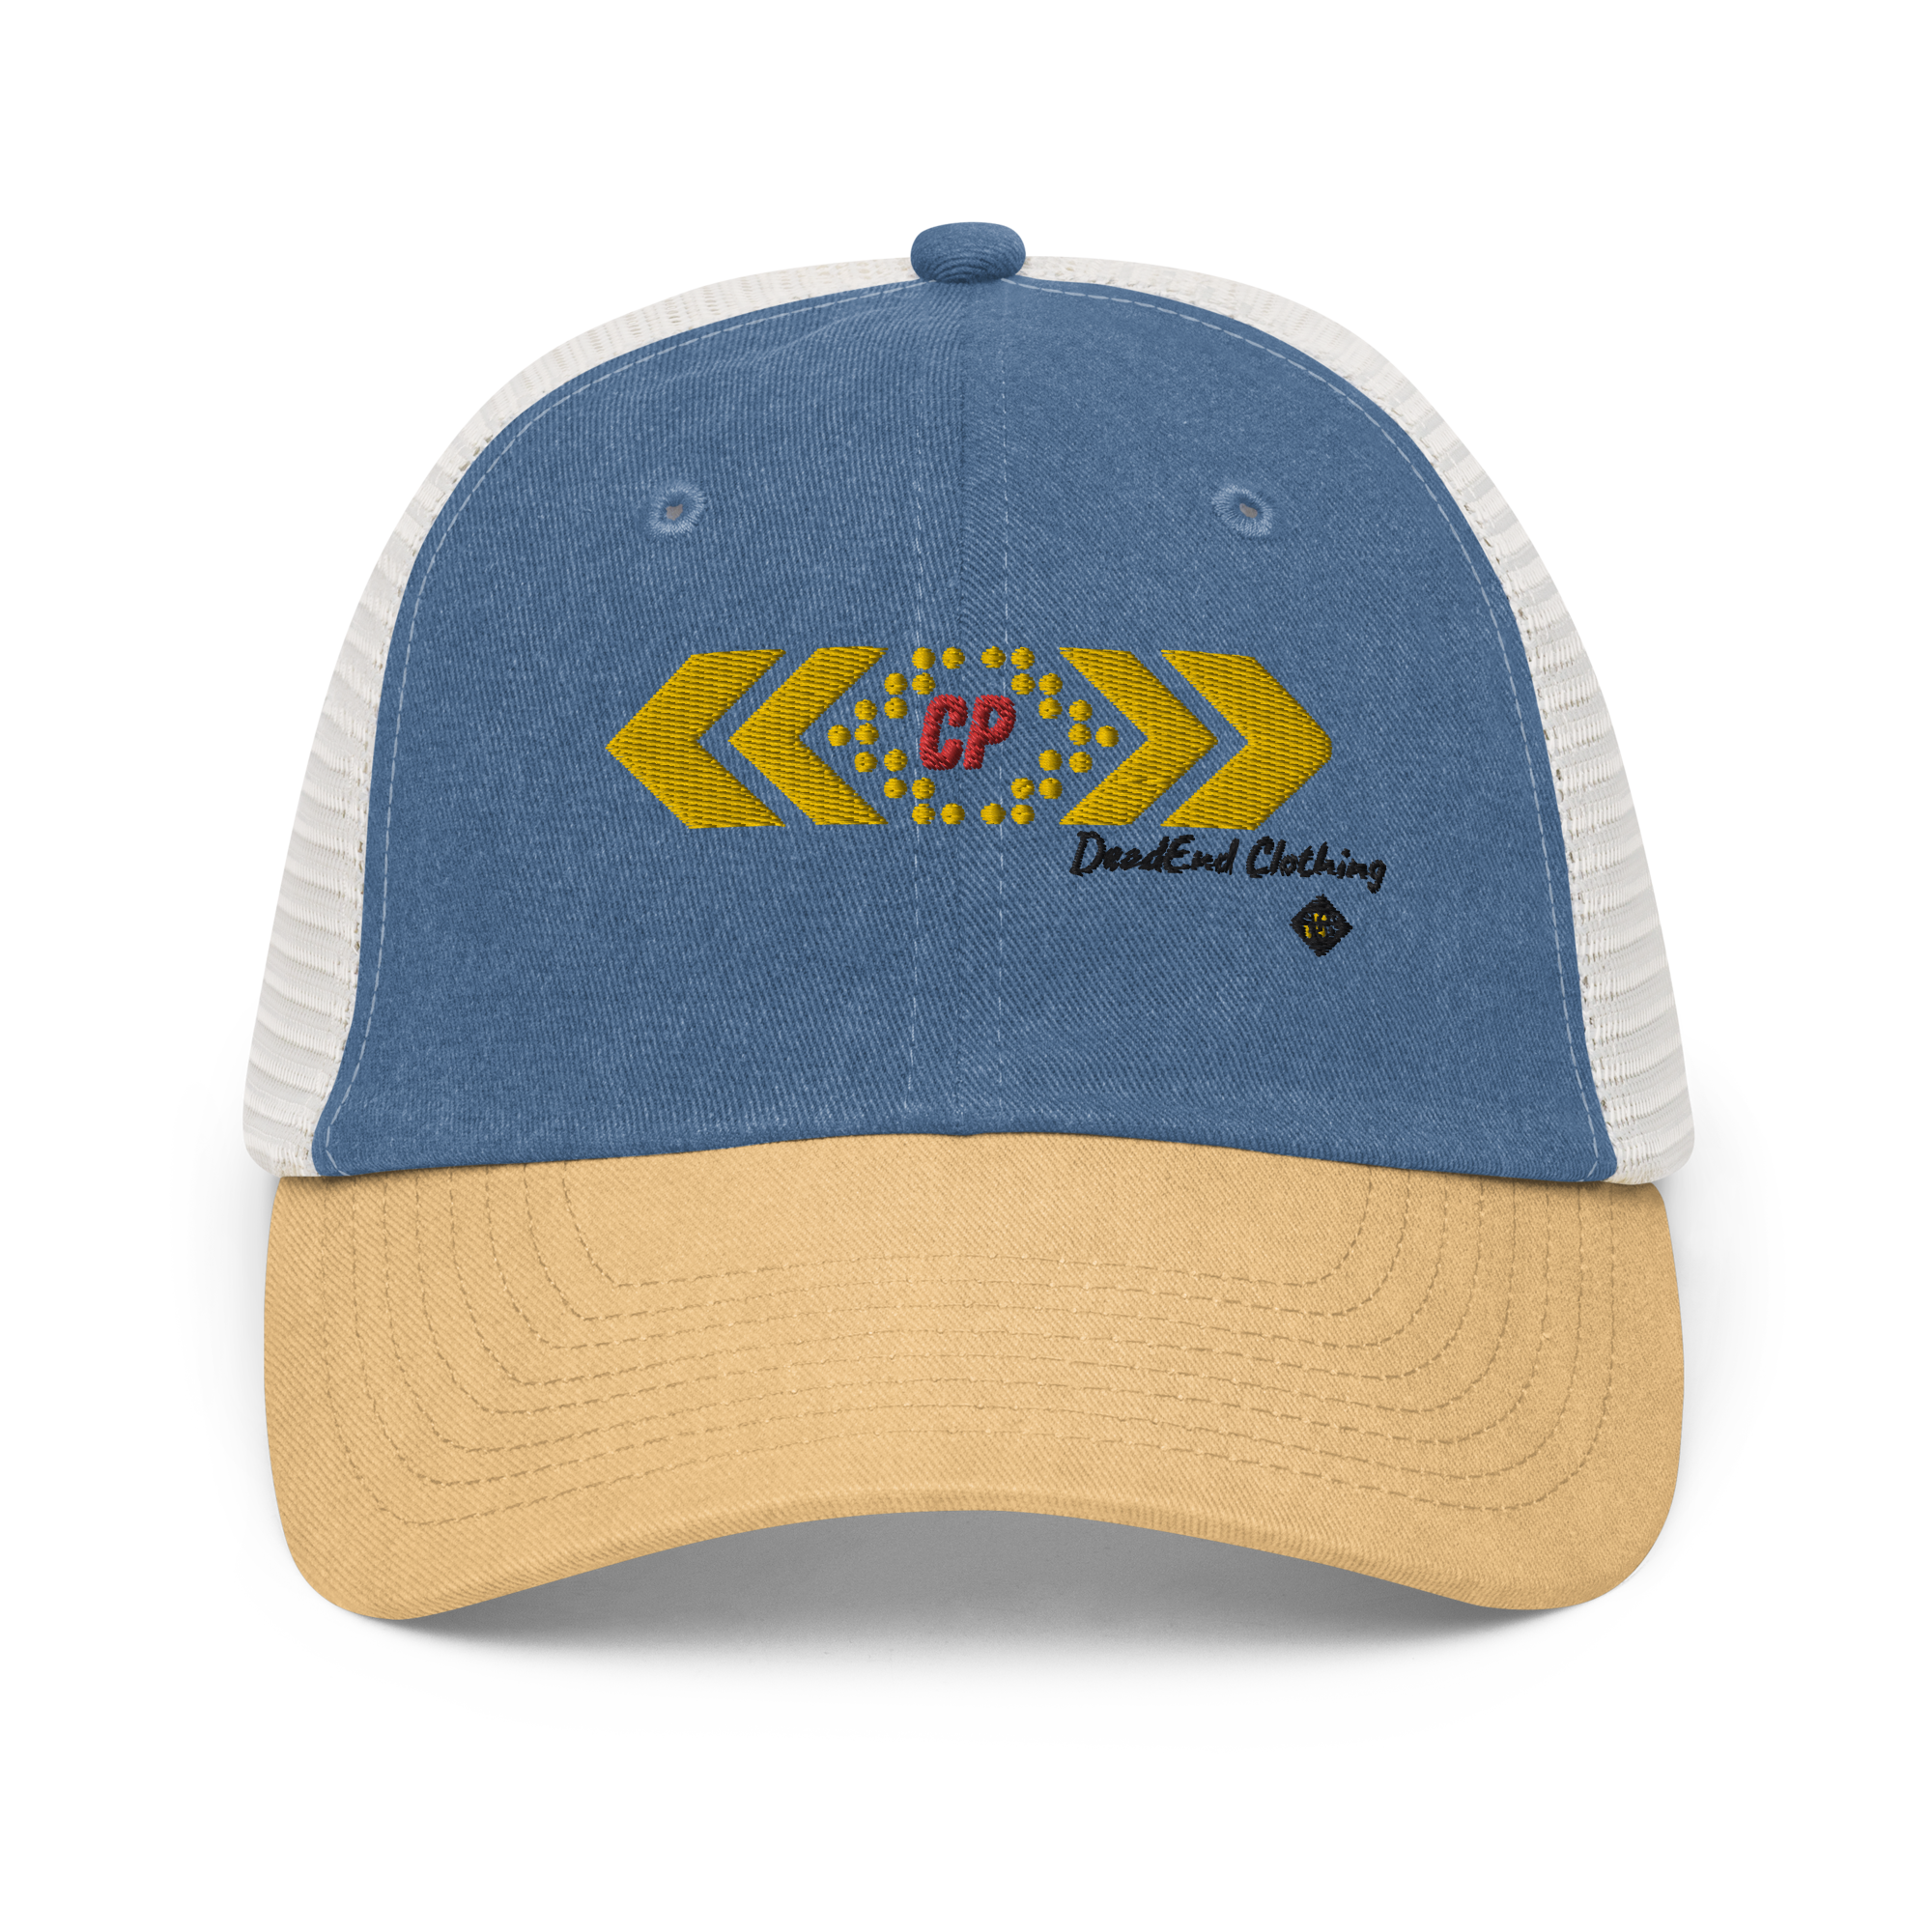 Pigment-dyed cap